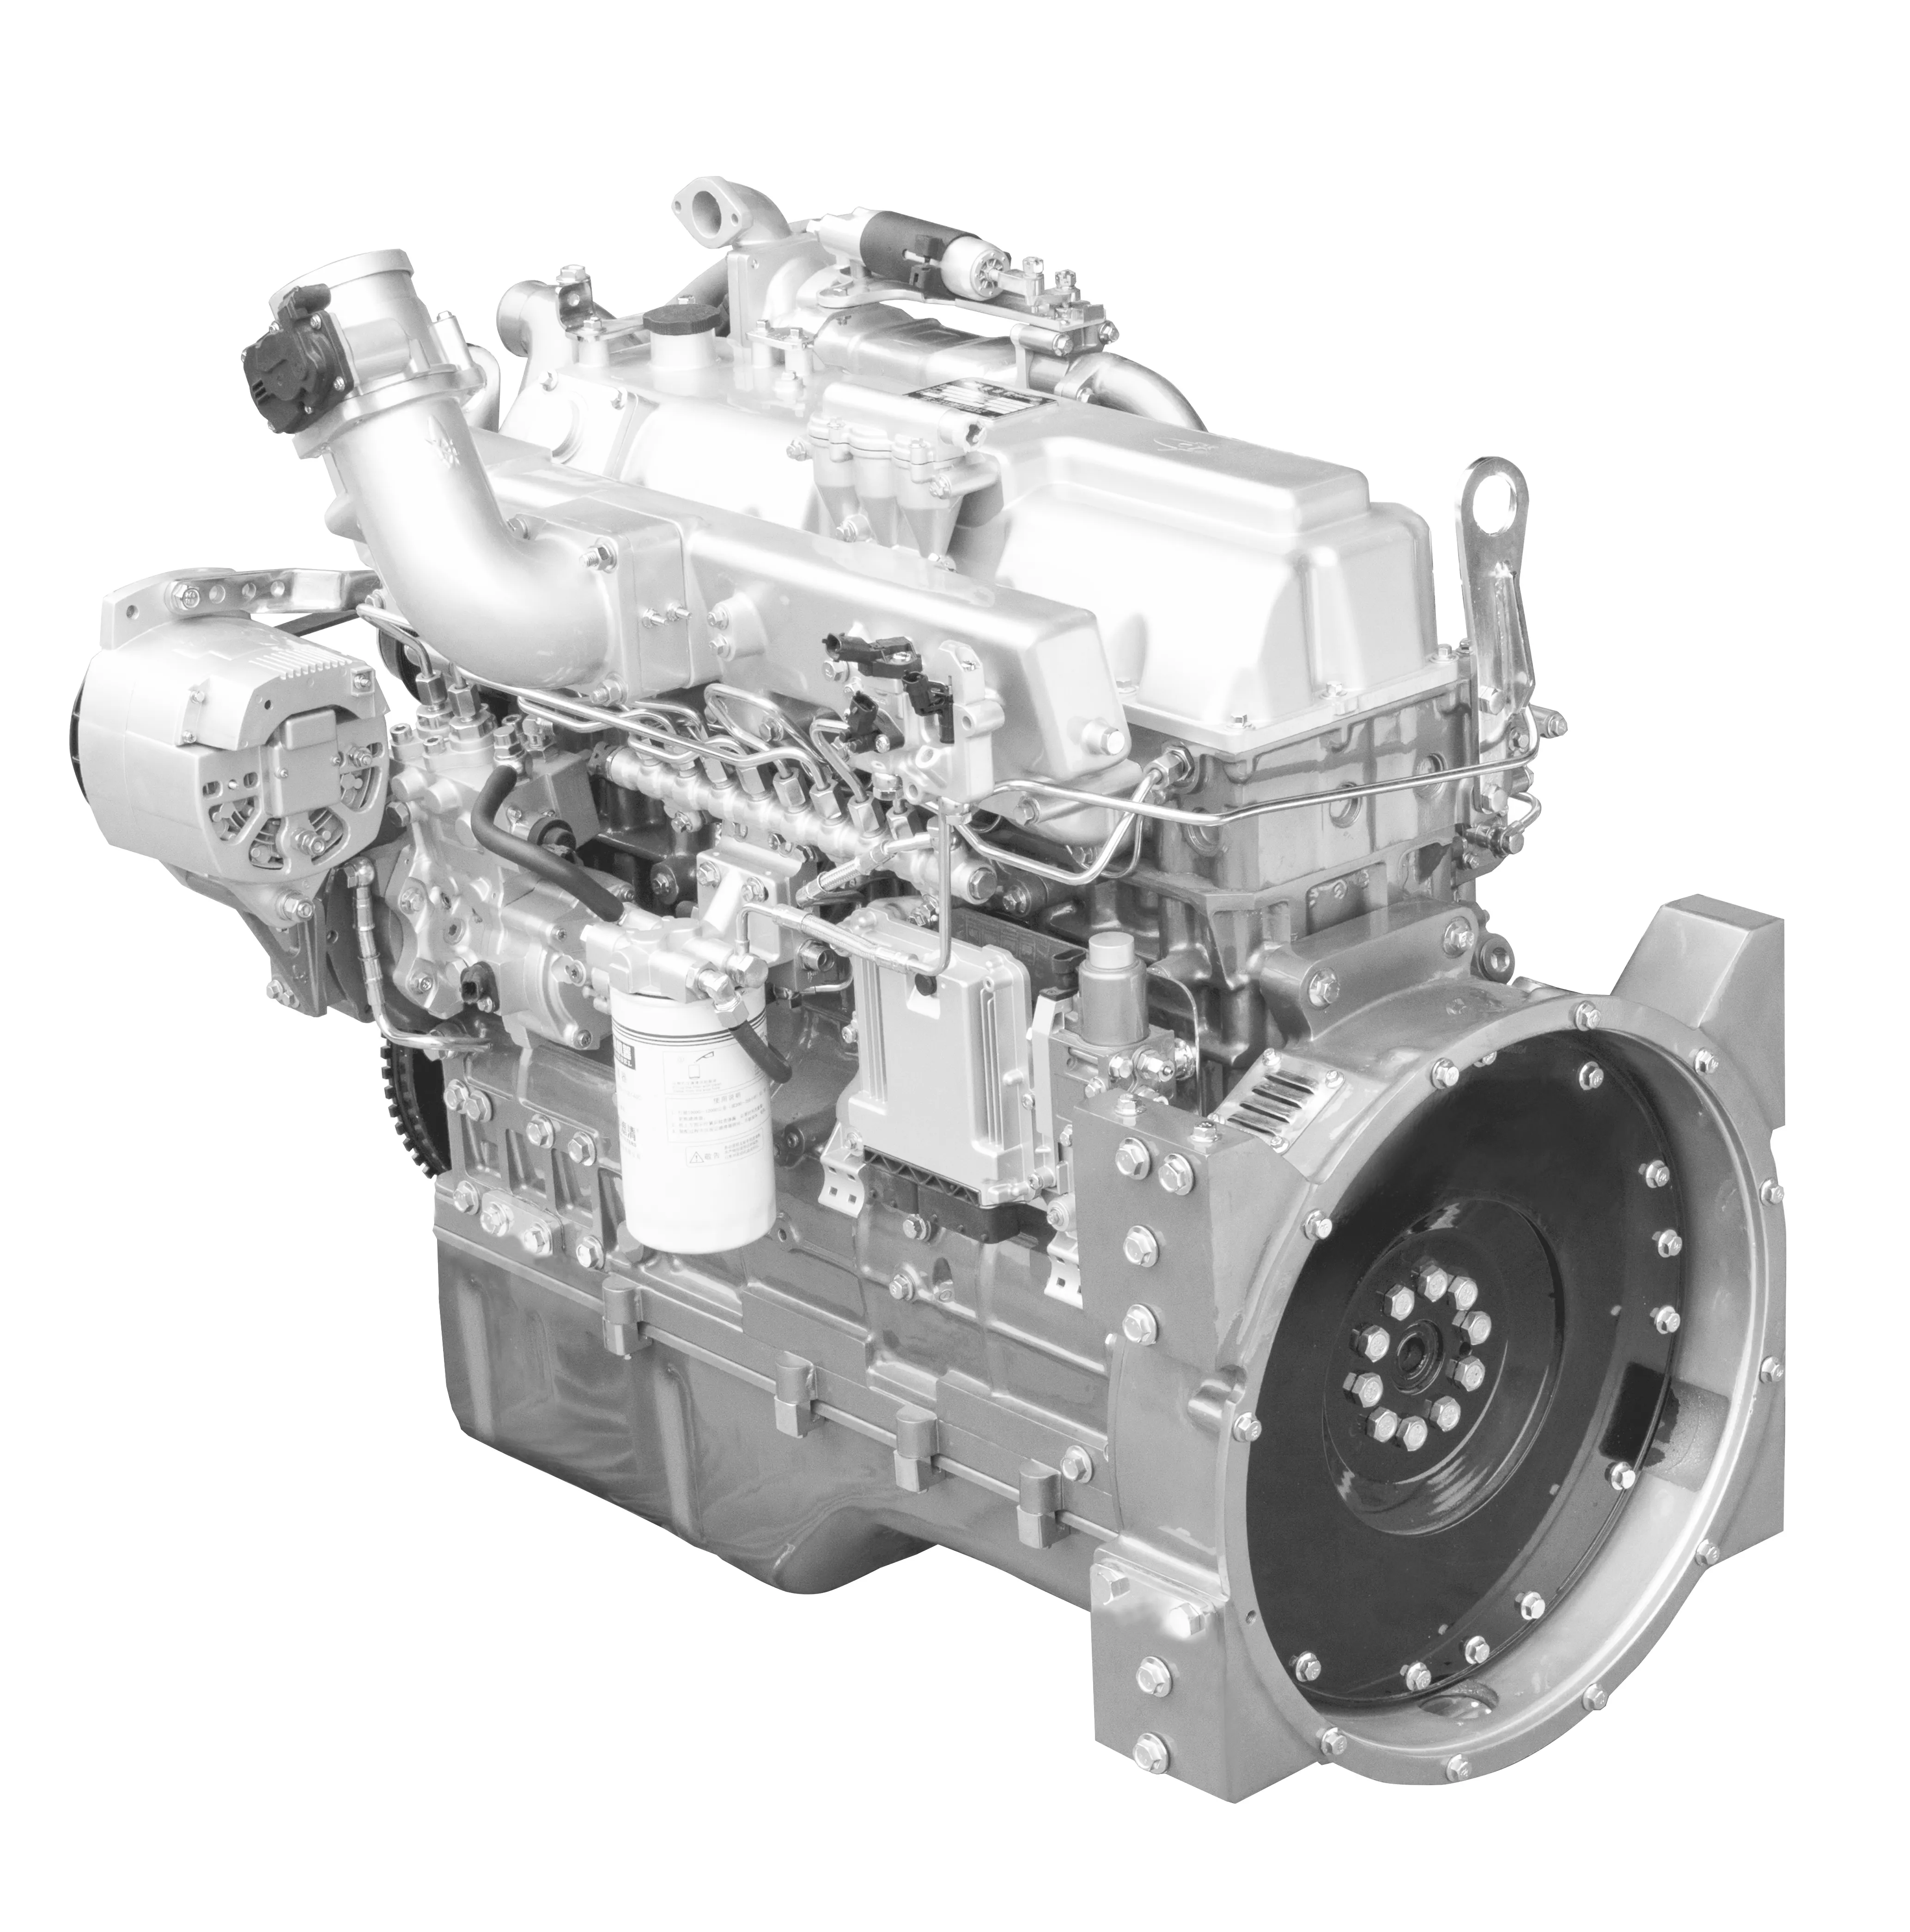 Yuchai YC6LN यूरो 5 उत्सर्जन गैस इंजन उच्च विश्वसनीयता कम गैस की खपत मजबूत शक्ति और कम कंपन शोर